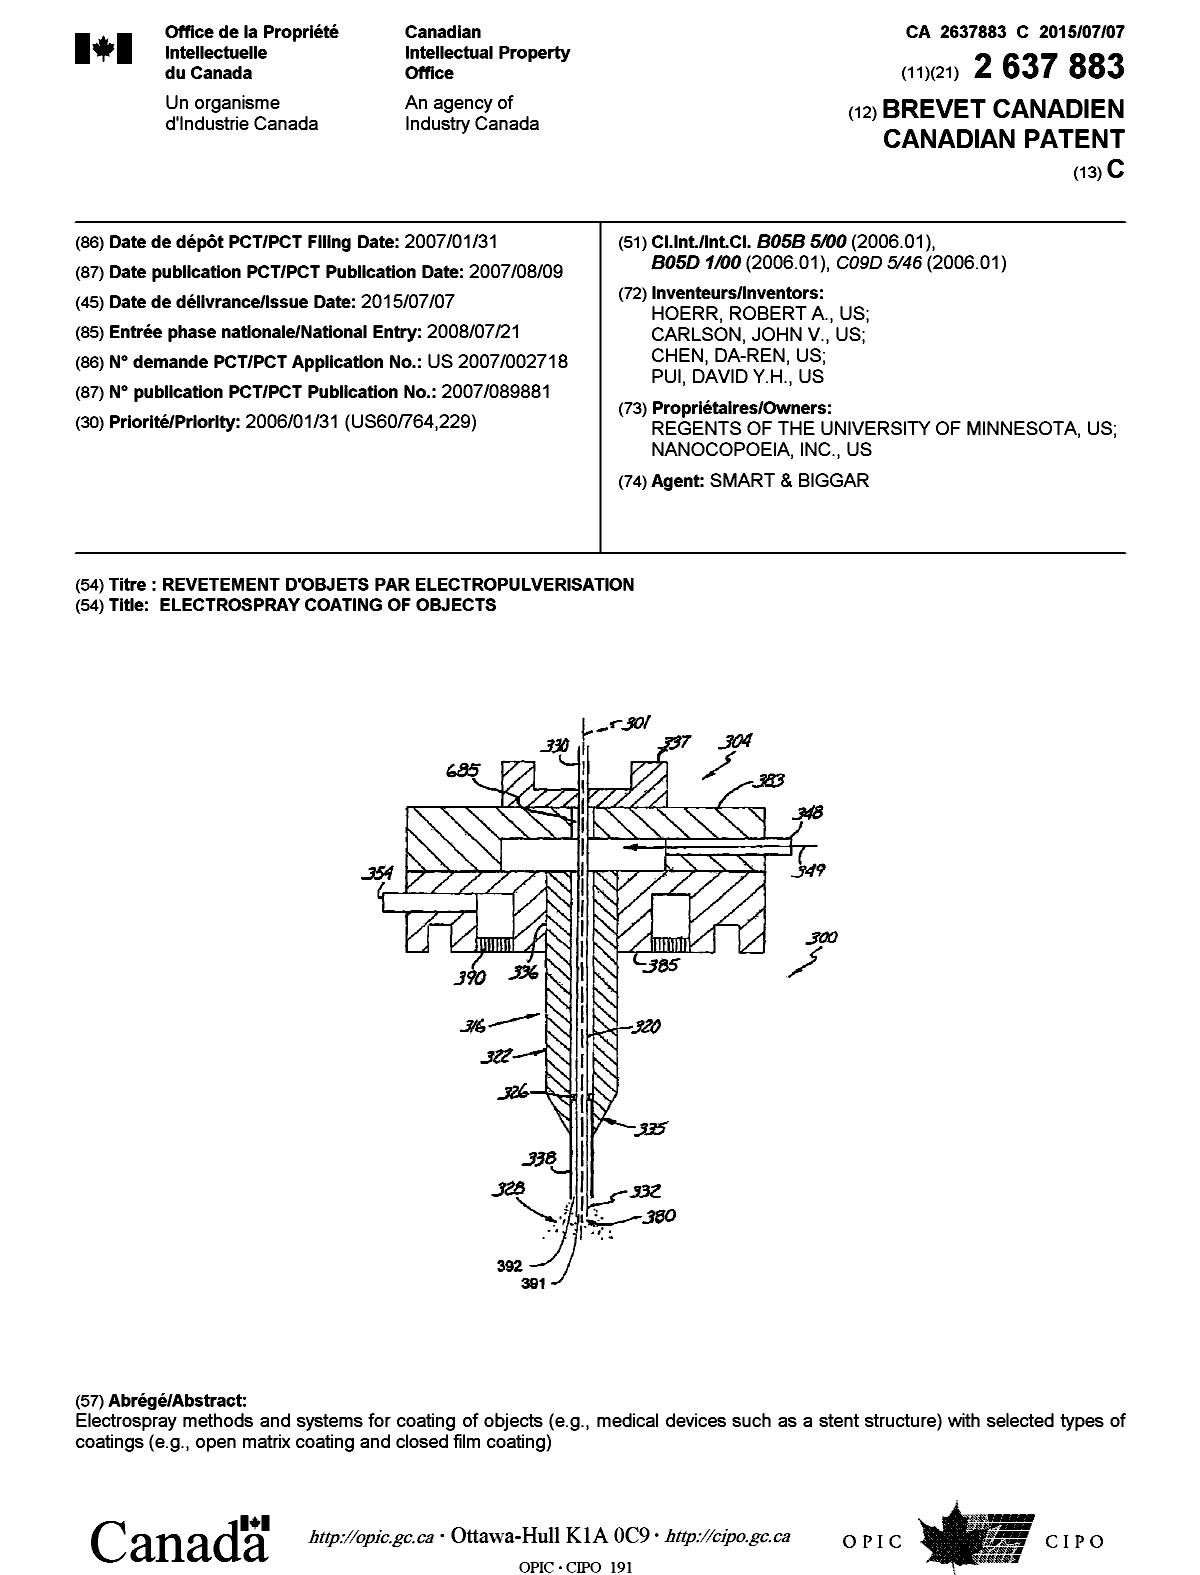 Document de brevet canadien 2637883. Page couverture 20150619. Image 1 de 1